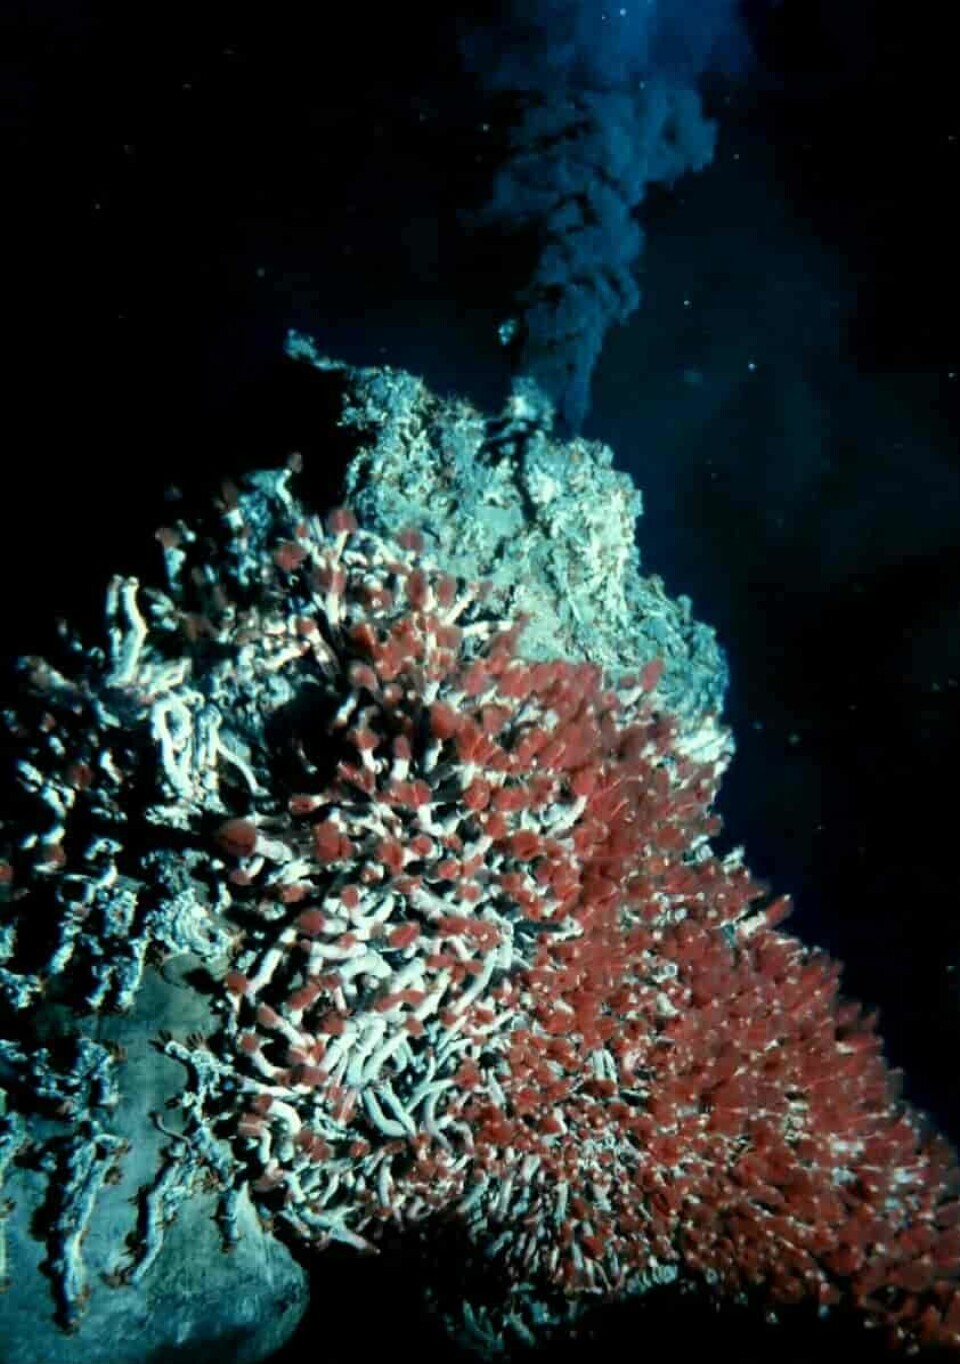 Skjeggbærere med røde gjeller og hundrevis av trollhummere er del av økosystemet som finnes rundt en svart skorstein